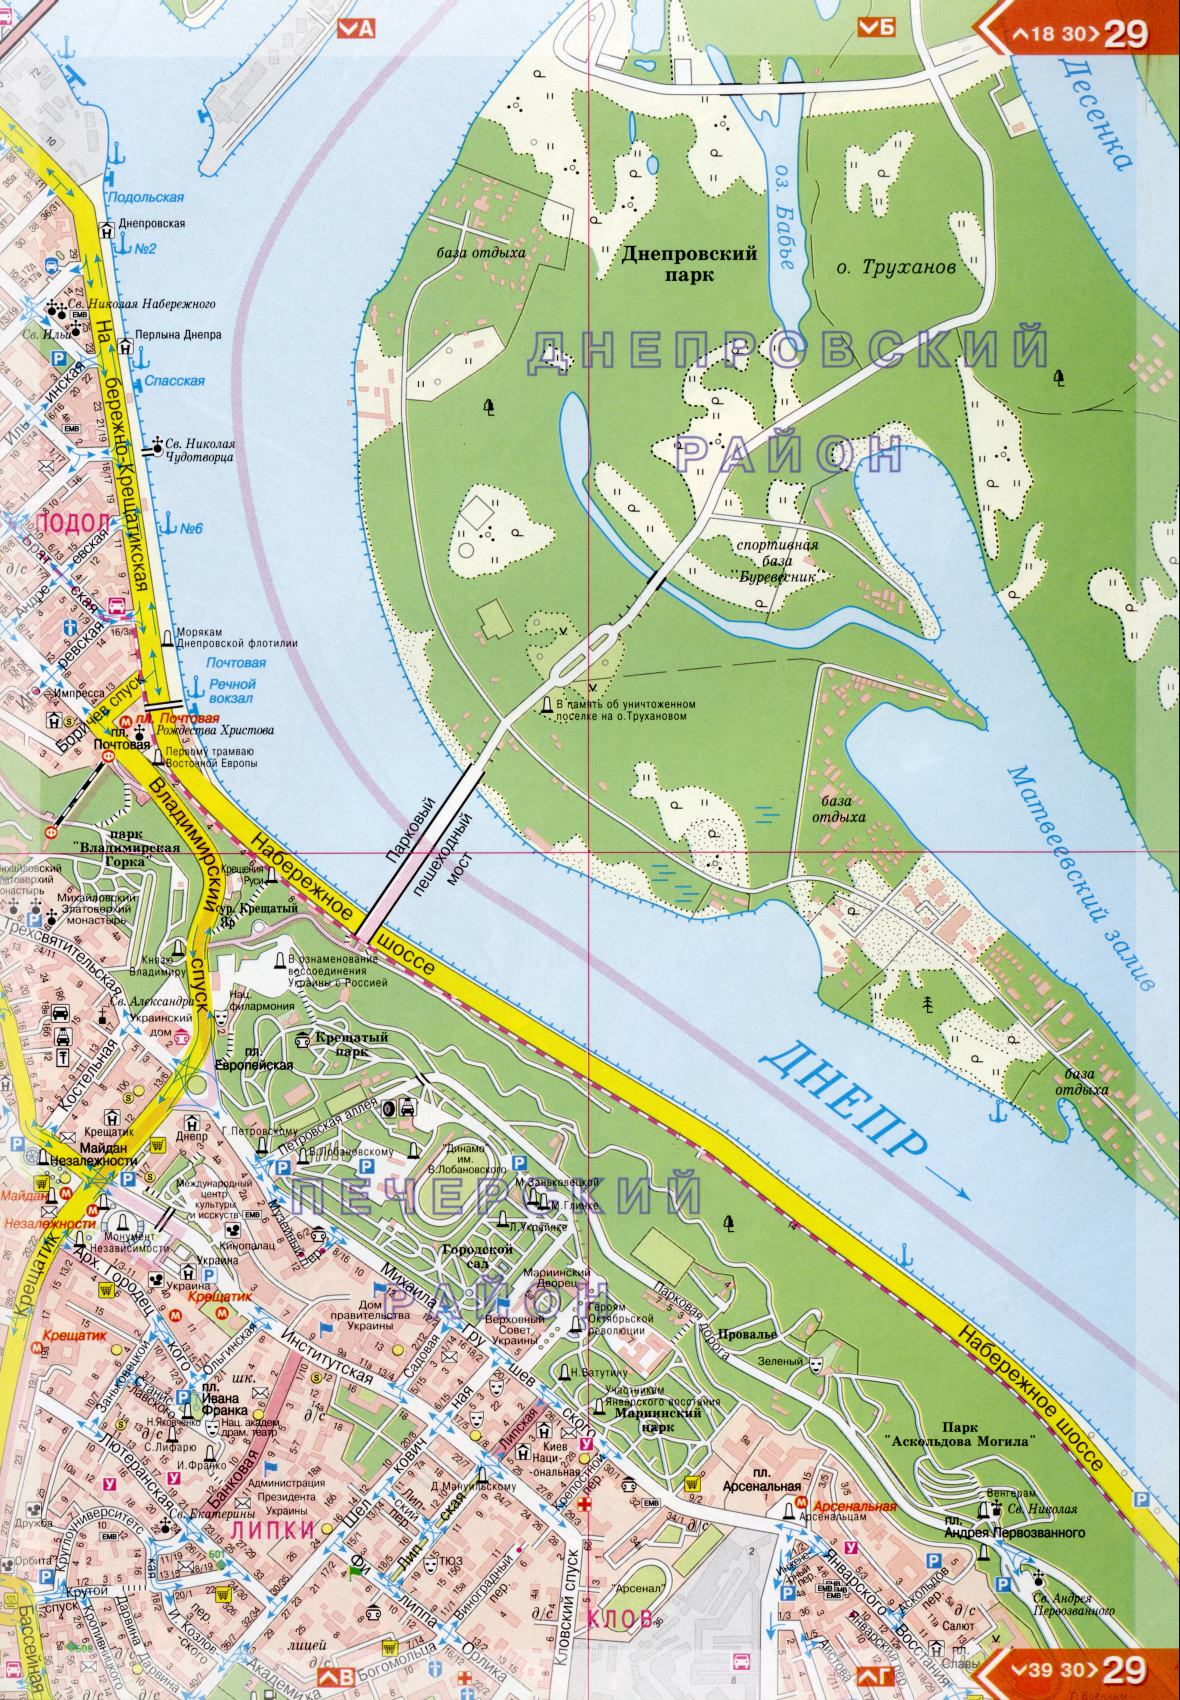 Kiev carte détails 1cm = 150m pour 45 feuilles. Carte de Kiev de l'atlas des routes. Télécharger une carte détaillée, F2